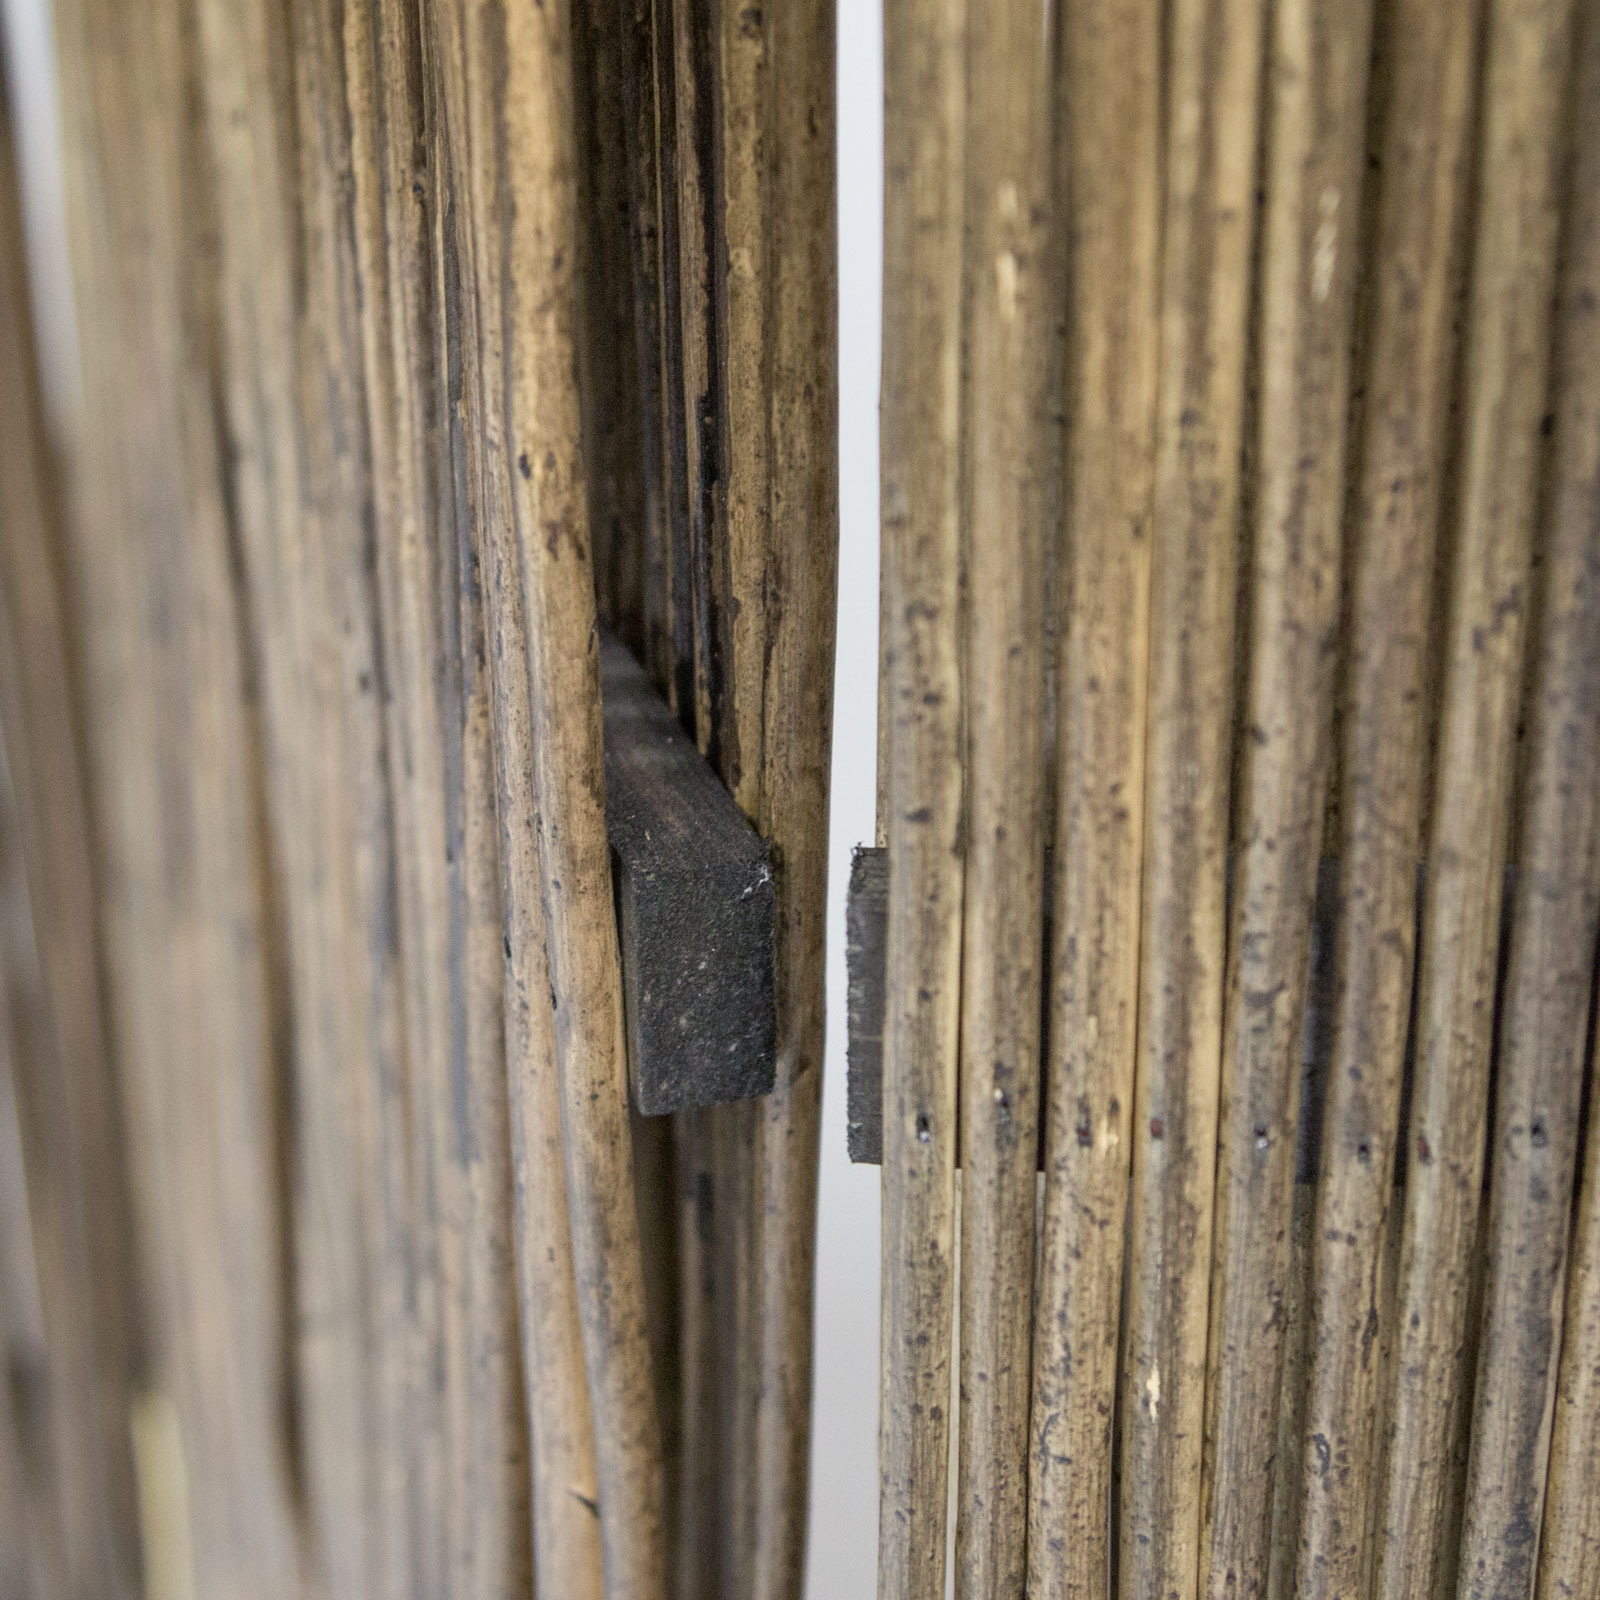 Paravent Raumteiler 3 teilig Holz Trennwand Sichtschutz Weidenparavent Grau